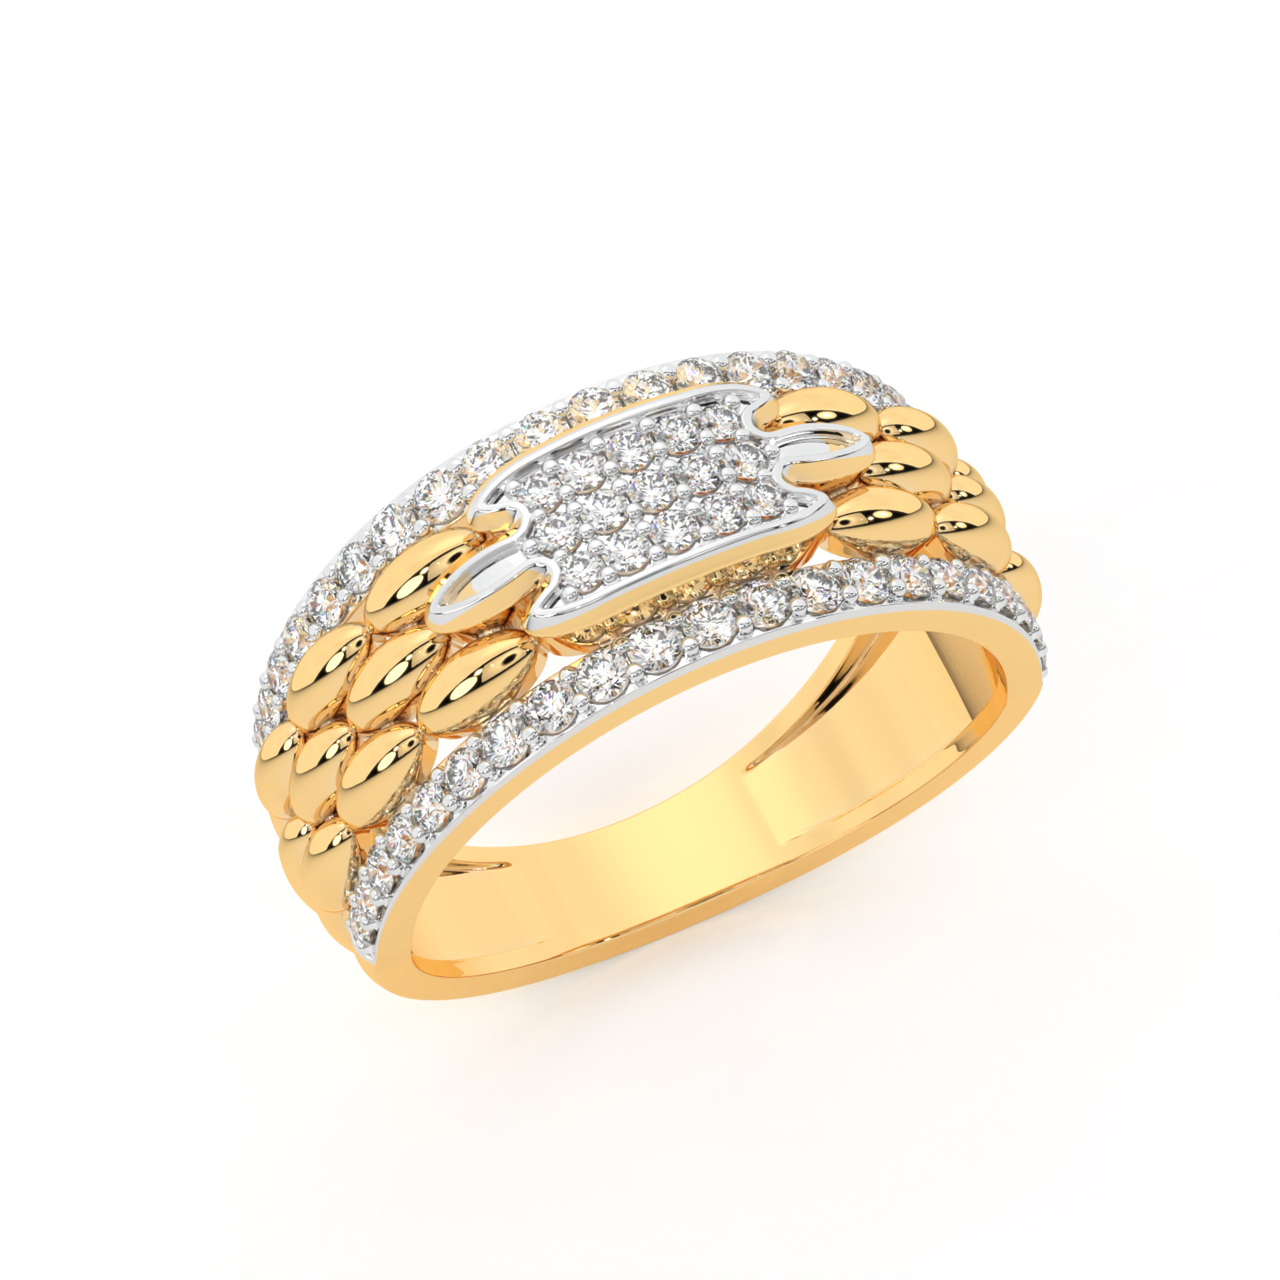 Buy Men's Gold Rings Online - Men's Collections | Jos Alukkas Online || Buy  Gold Rings Online – Gold Traditional Rings Online| Jos Alukkas Online